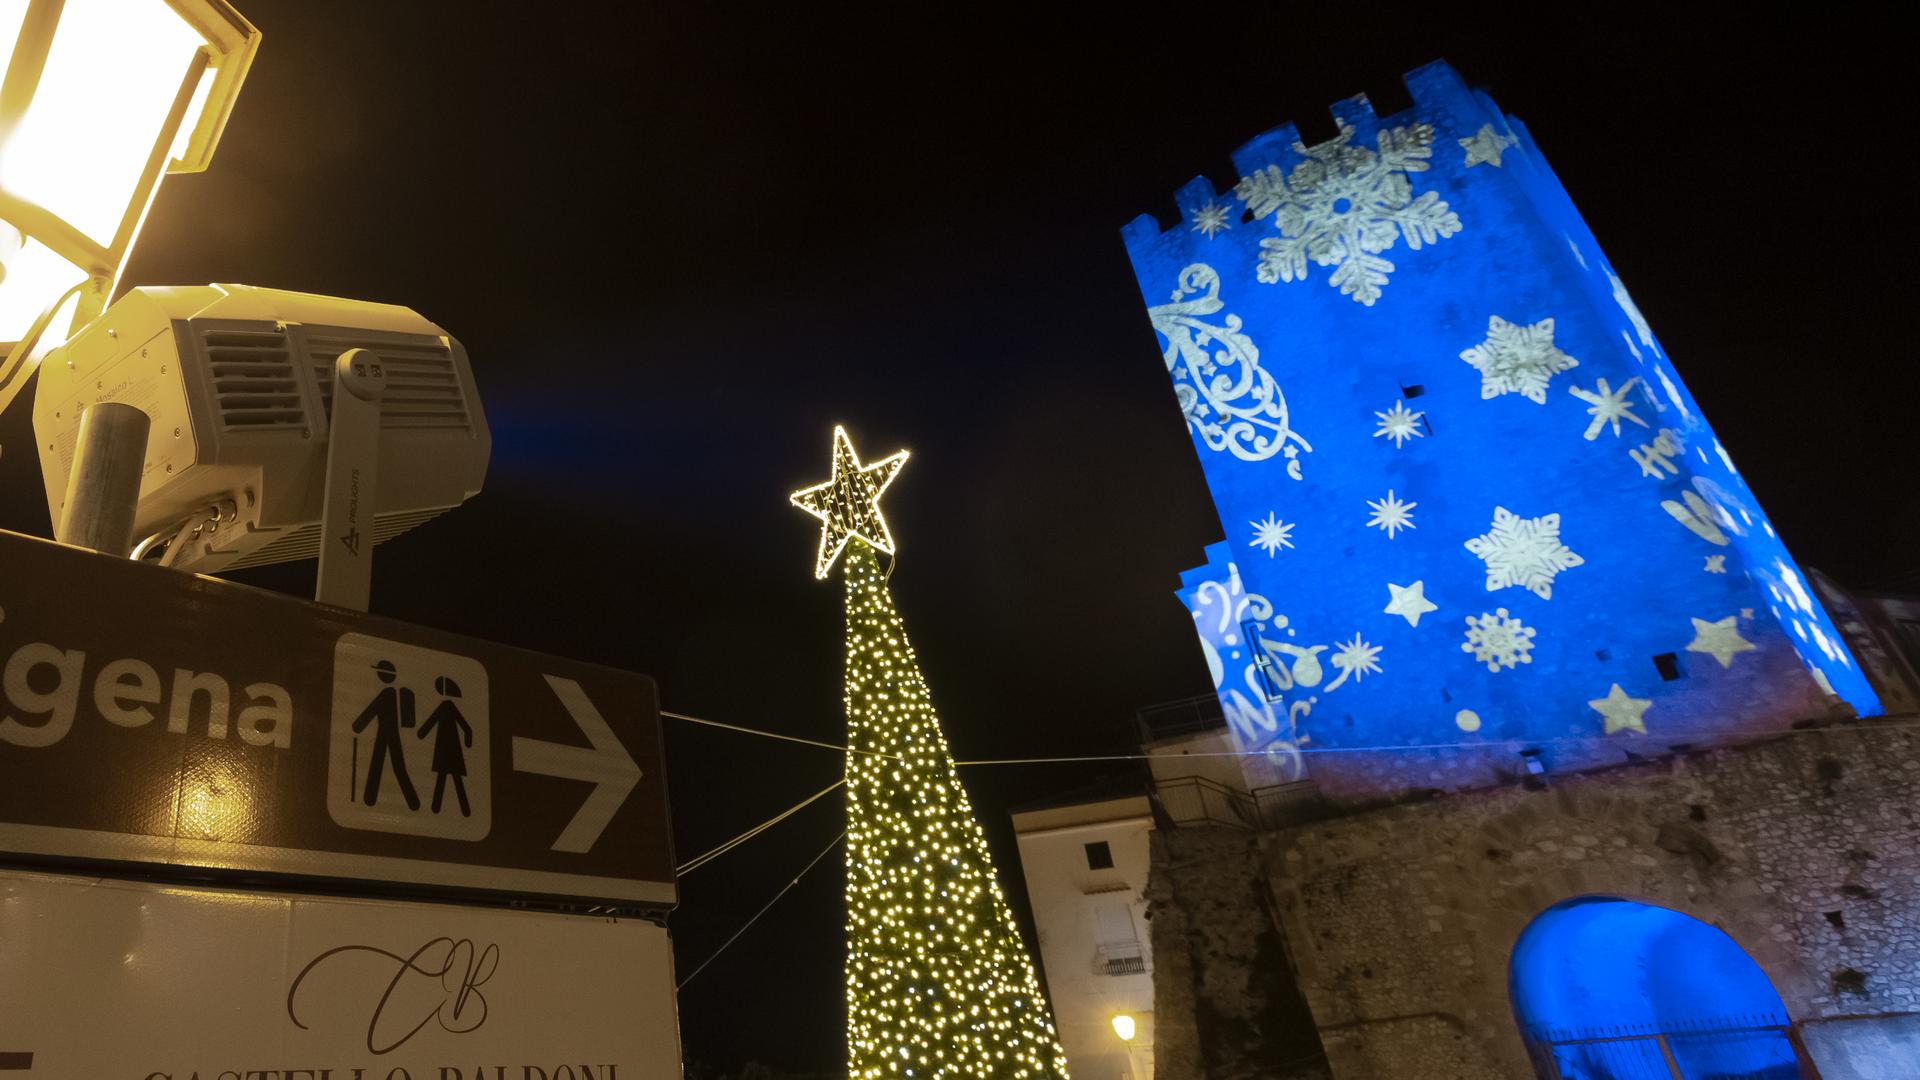 PROLIGHTS Mosaico L illuminates winter holidays sustainably